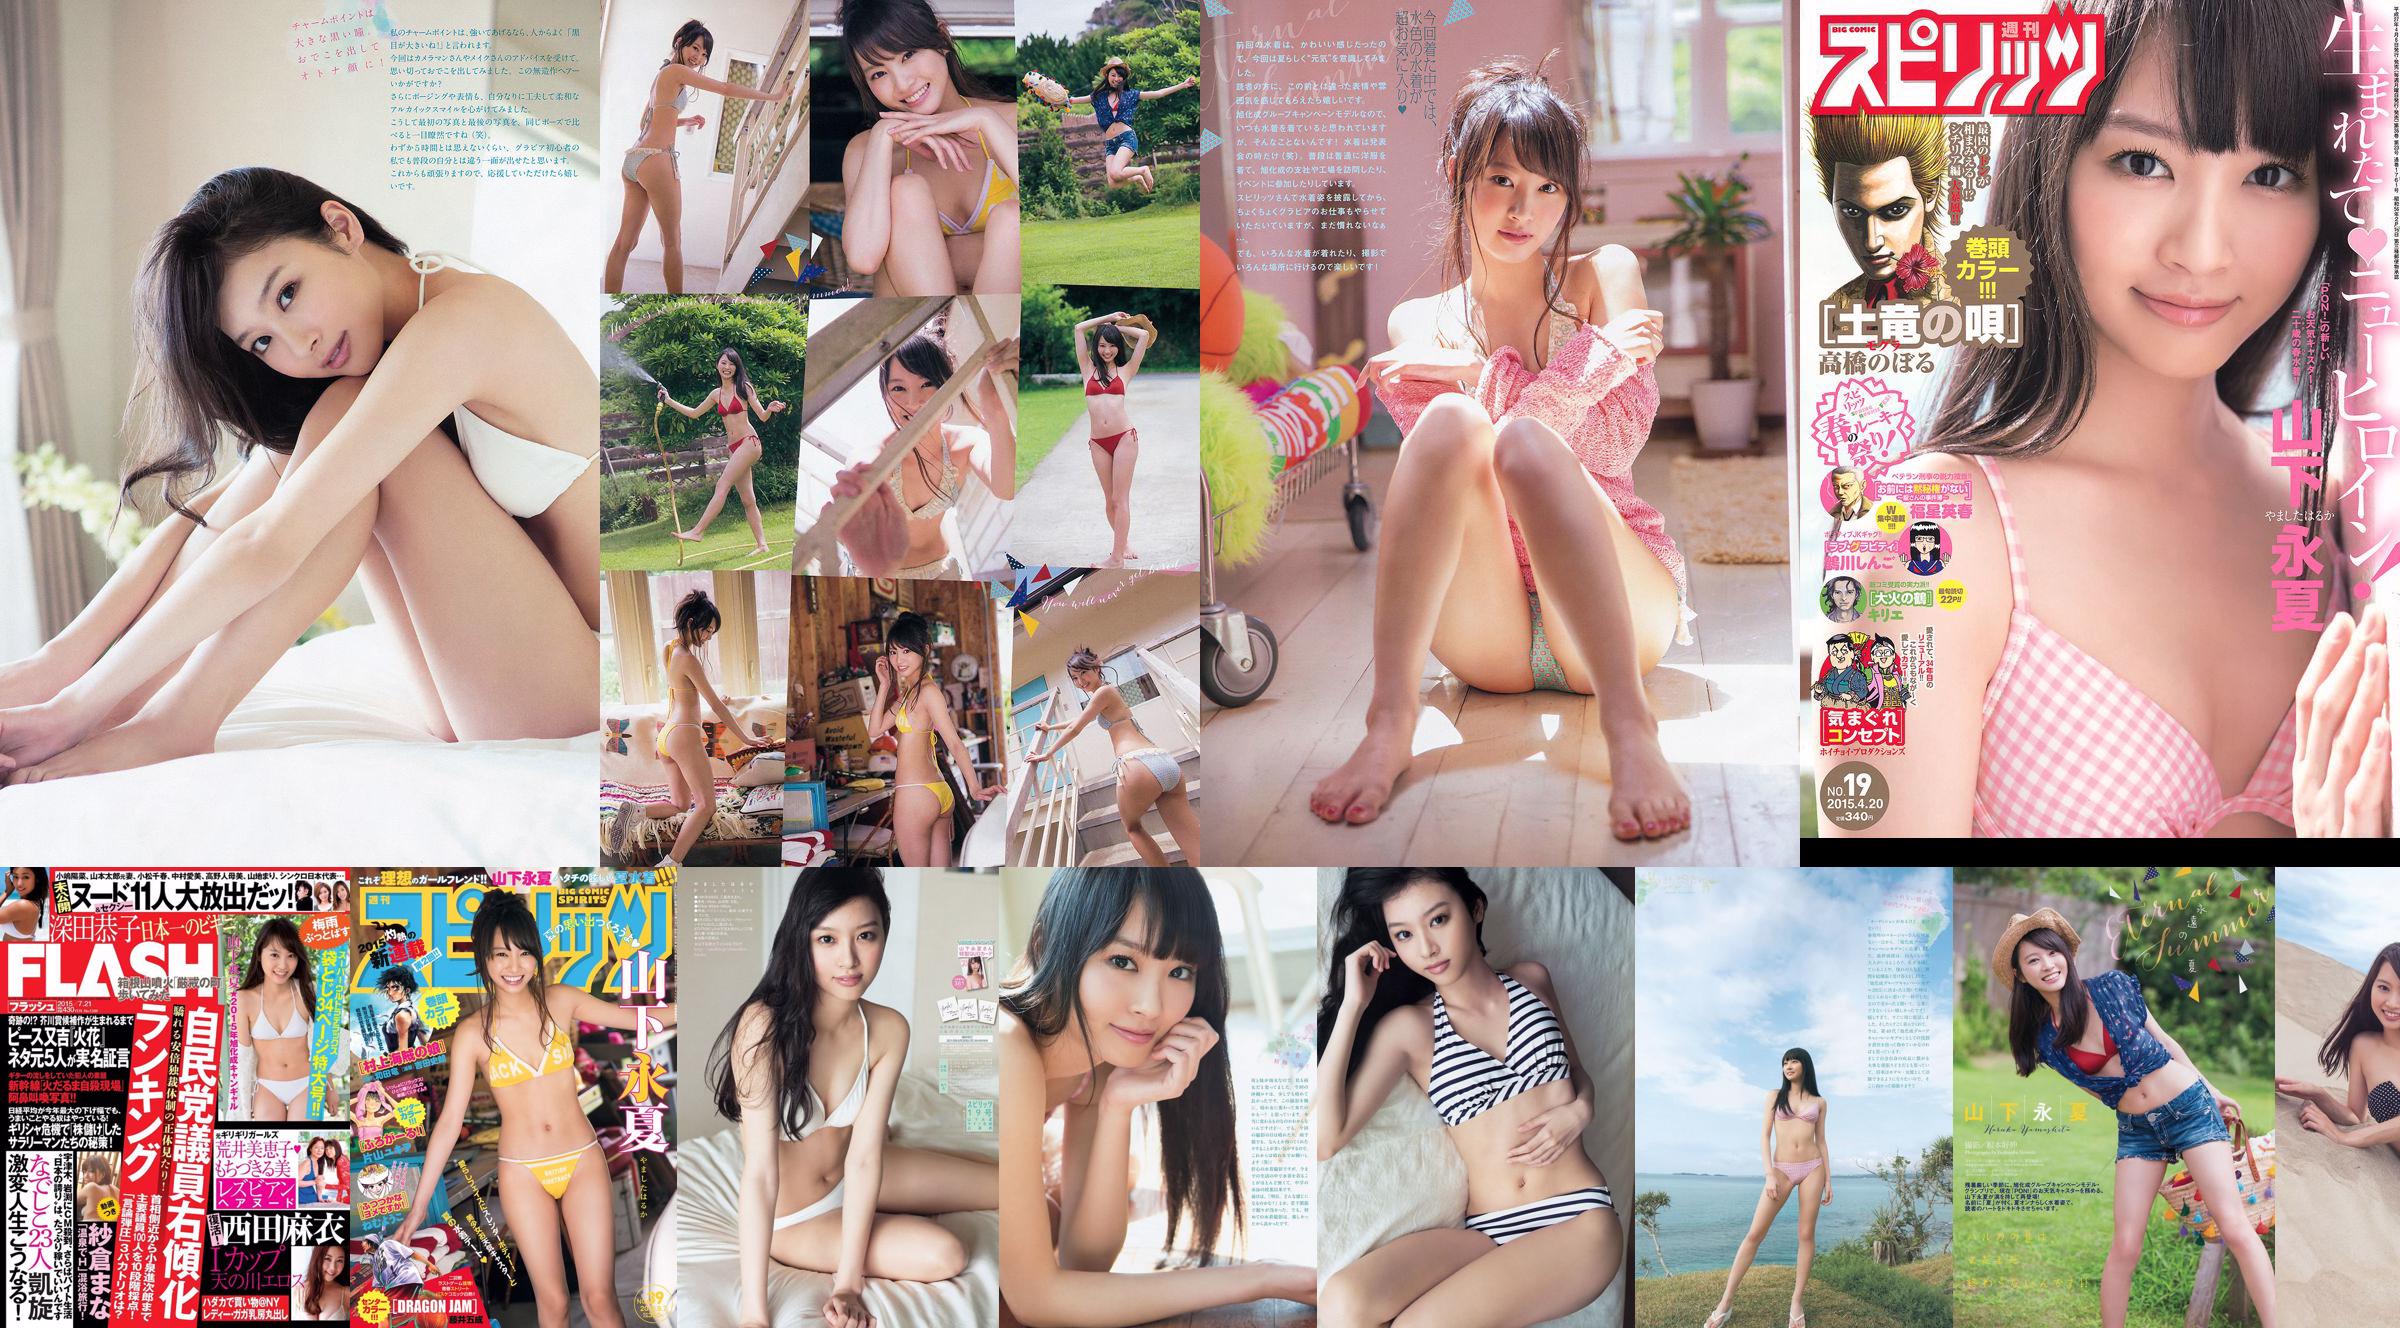 [Cotygodniowy Big Comic Spirits] Yamashita Yongxia 2015 nr 39 Photo Magazine No.f2e22e Strona 1